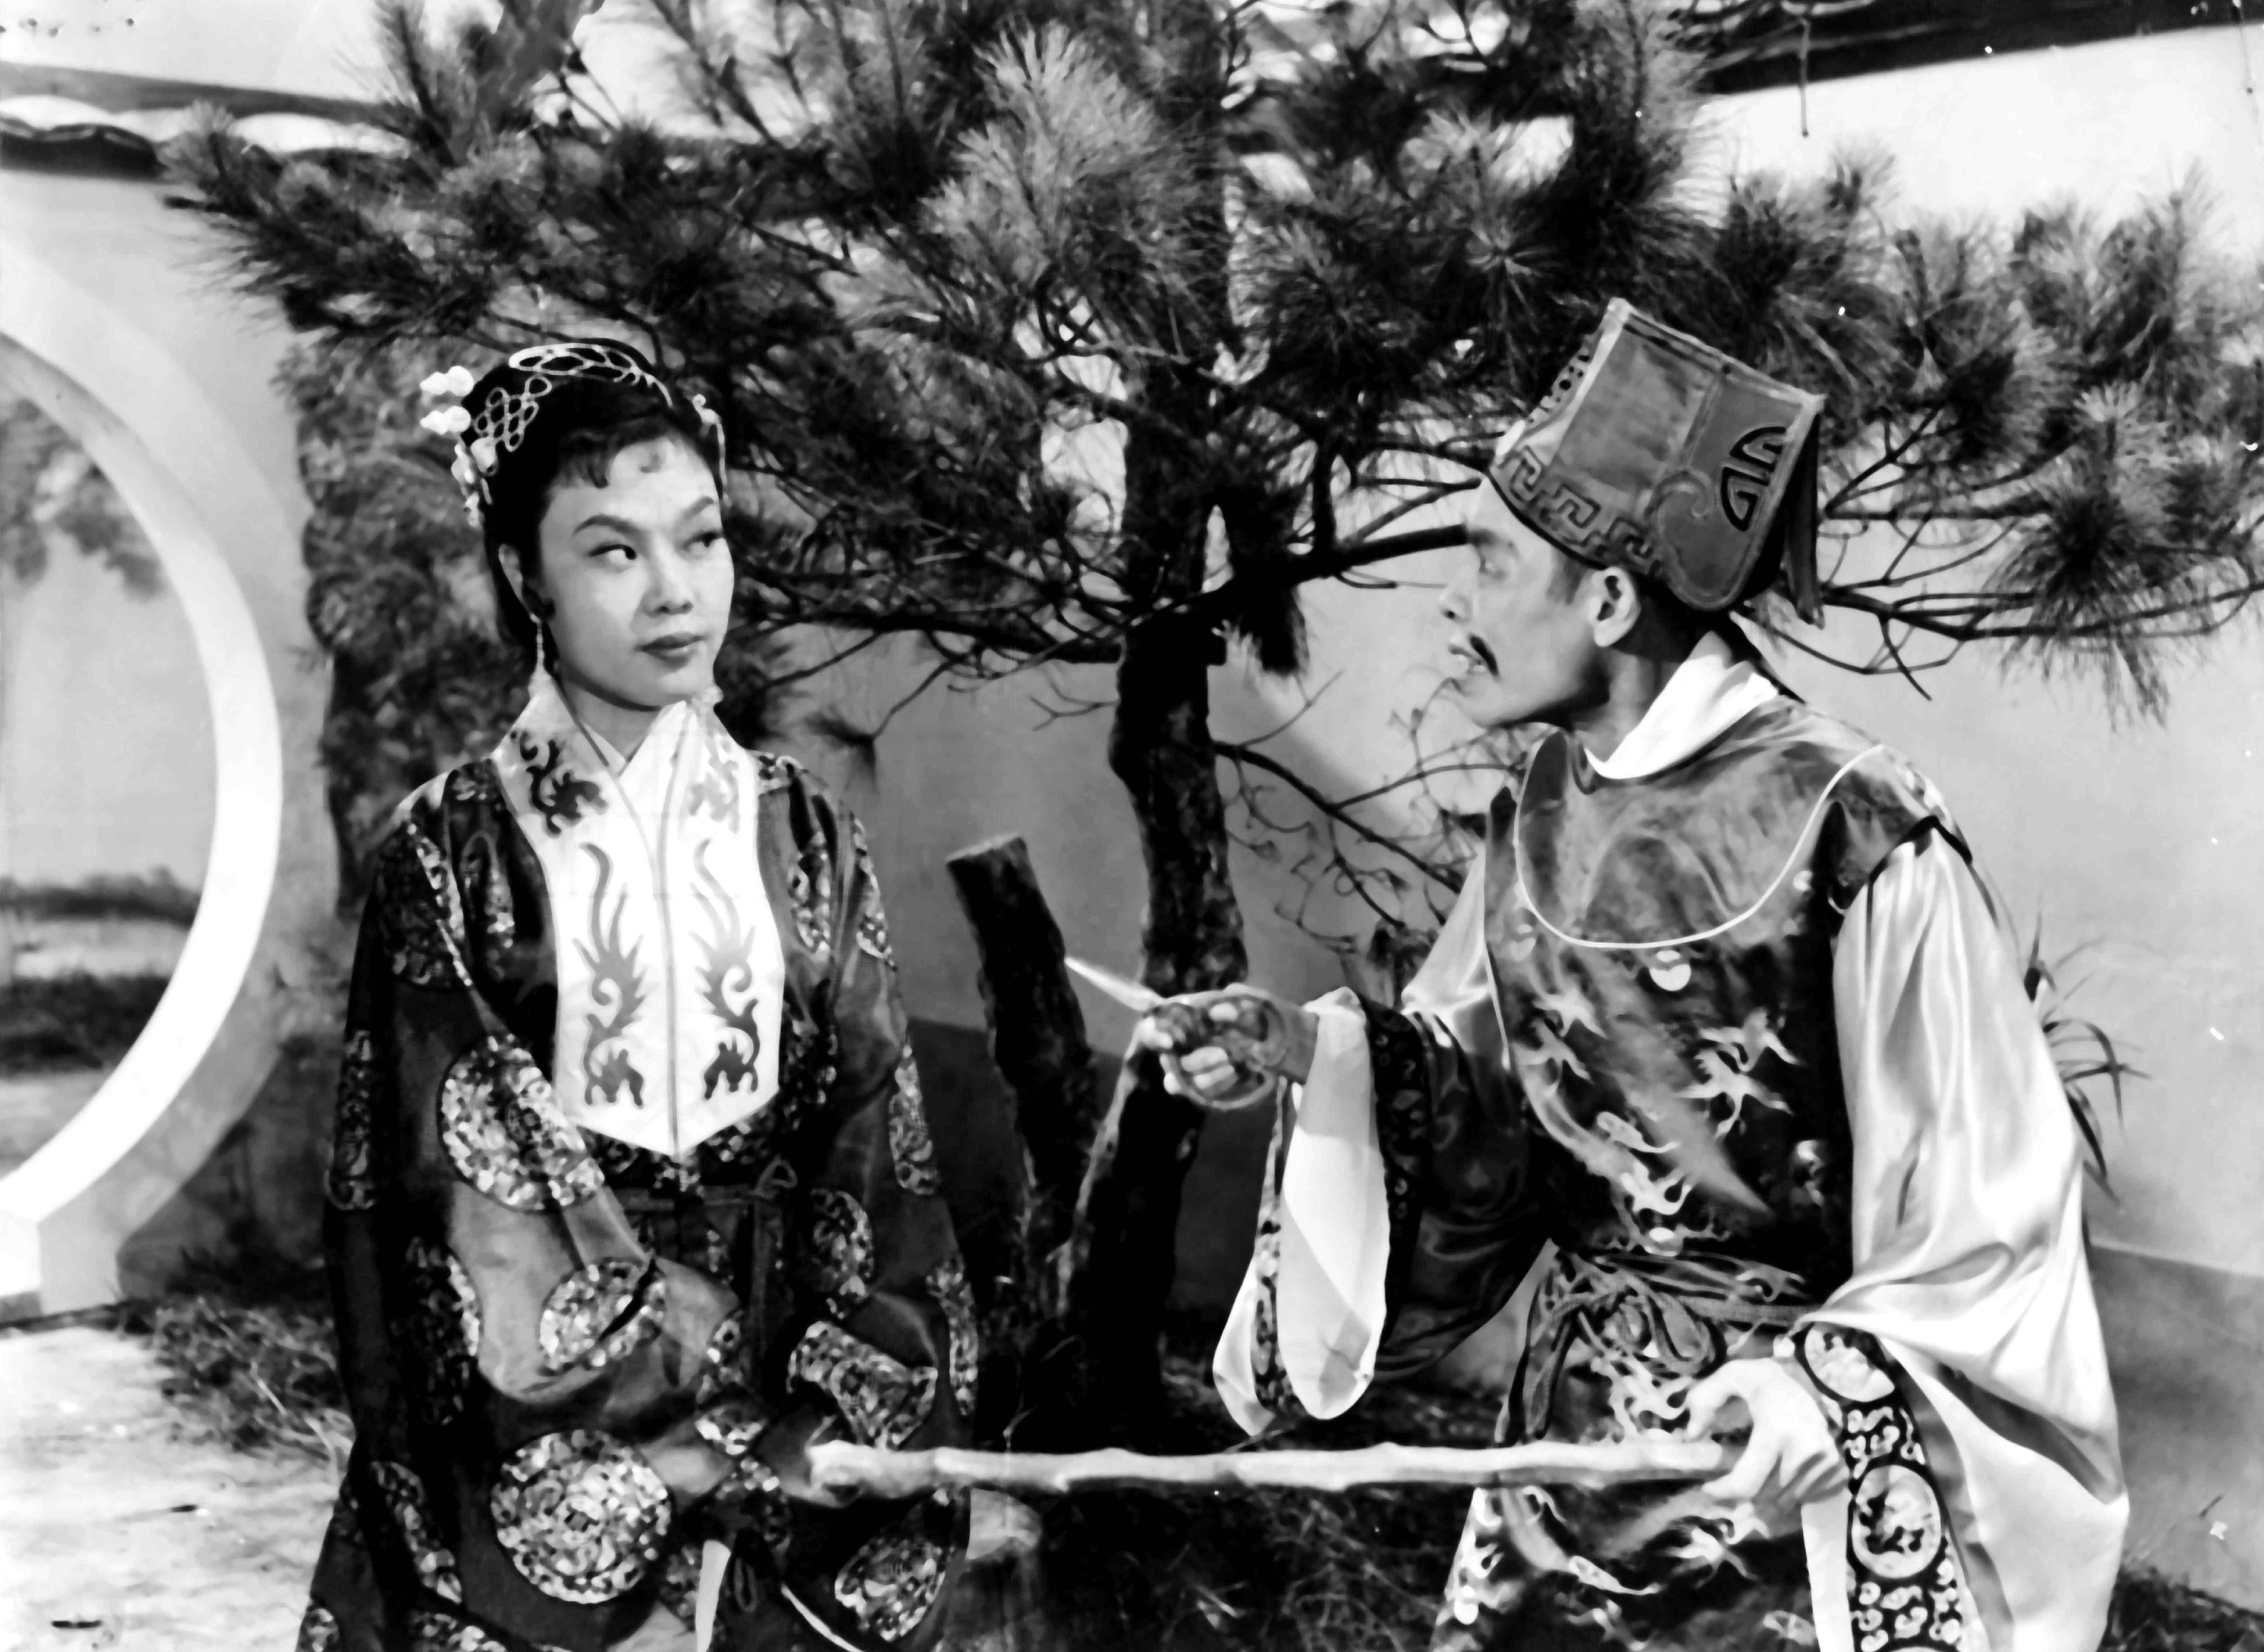 康樂及文化事務署香港電影資料館的「瑰寶情尋」系列在十二月至明年五月以「聲影『留』傳II」為題隆重登場，期間每月的首個星期日將放映兩套主題相近但在不同年代製作的電影，讓觀眾透過電影跨越時空，見證不同年代電影人的感悟和省思。圖示《莊周蝴蝶夢》（1956）劇照。